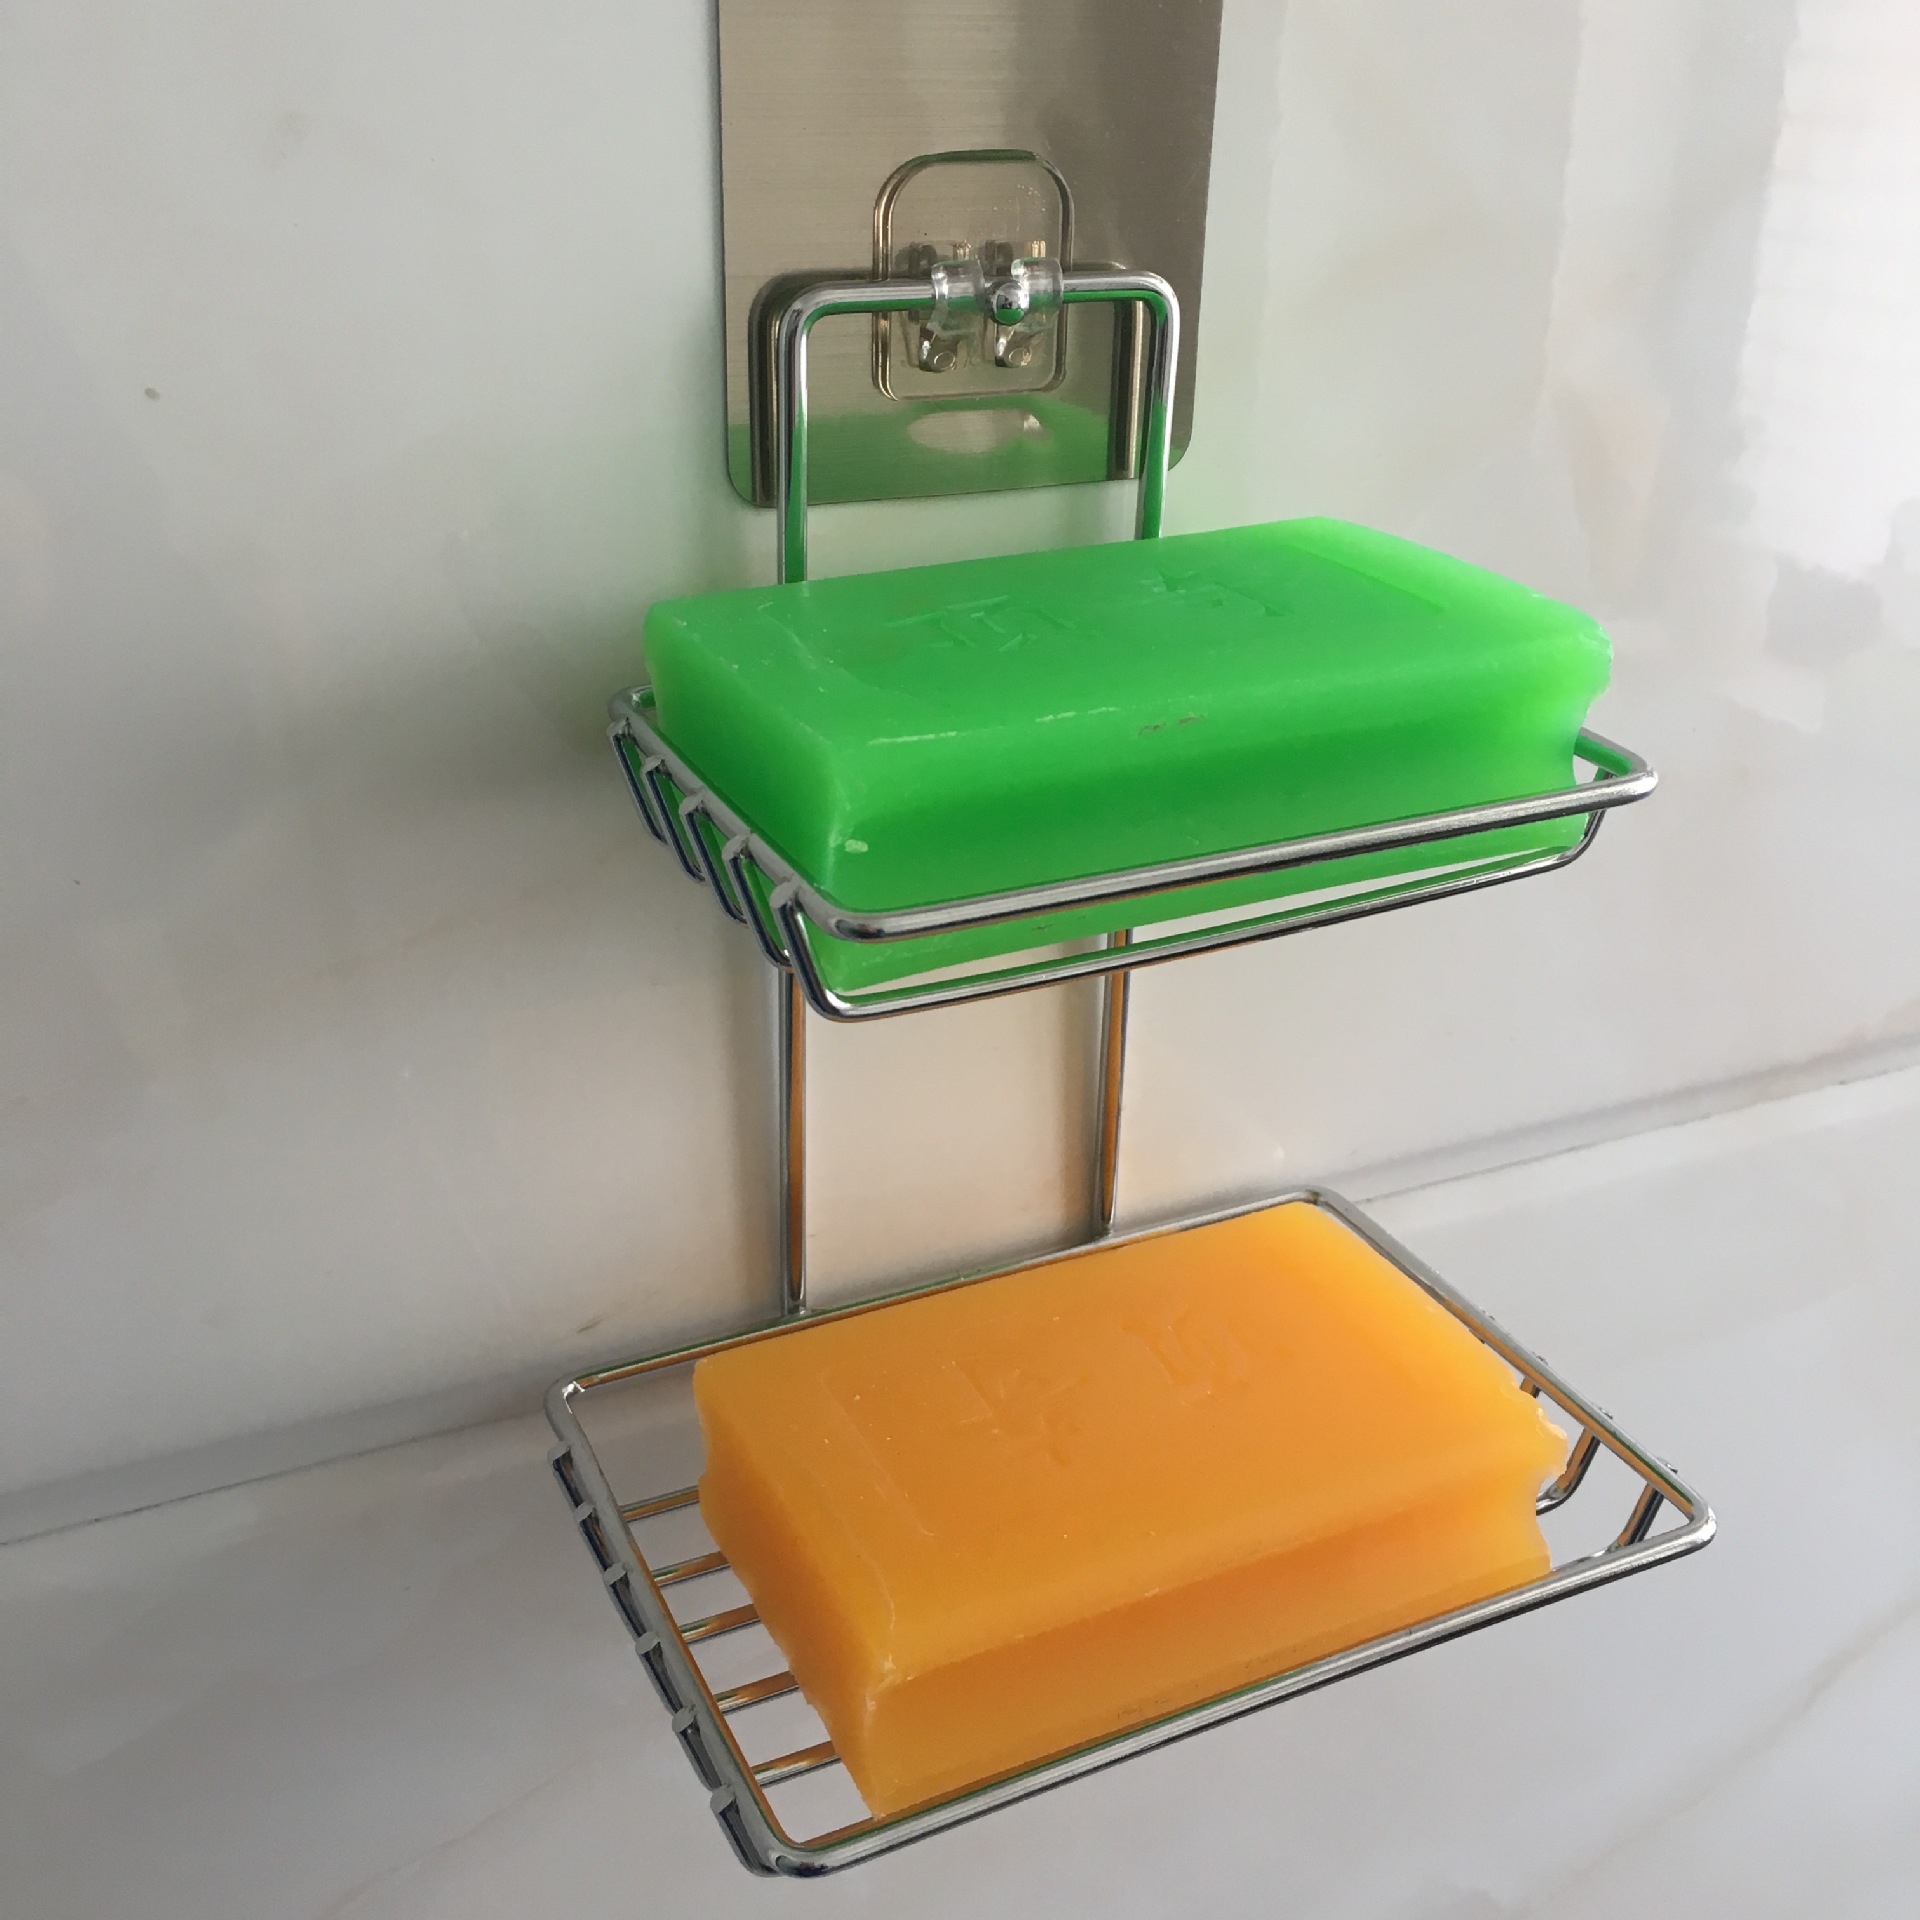 现货创意肥皂盒厨房卫浴双层皂碟可沥水海绵吸水陶瓷香皂盒定制-阿里巴巴